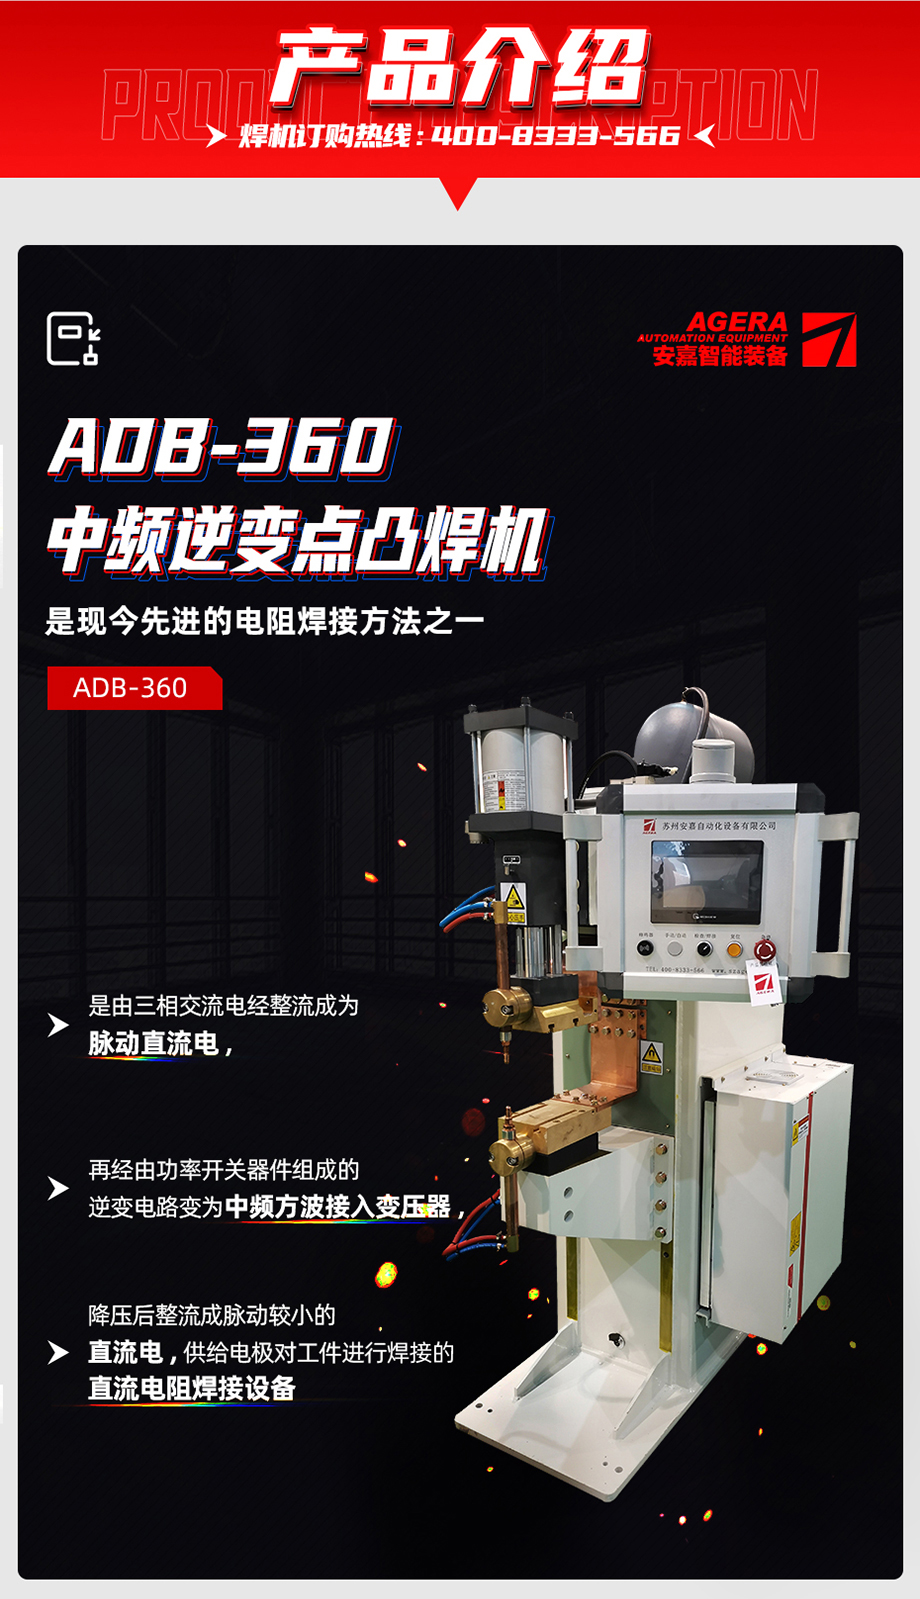 ADB-360中频点焊机产品介绍